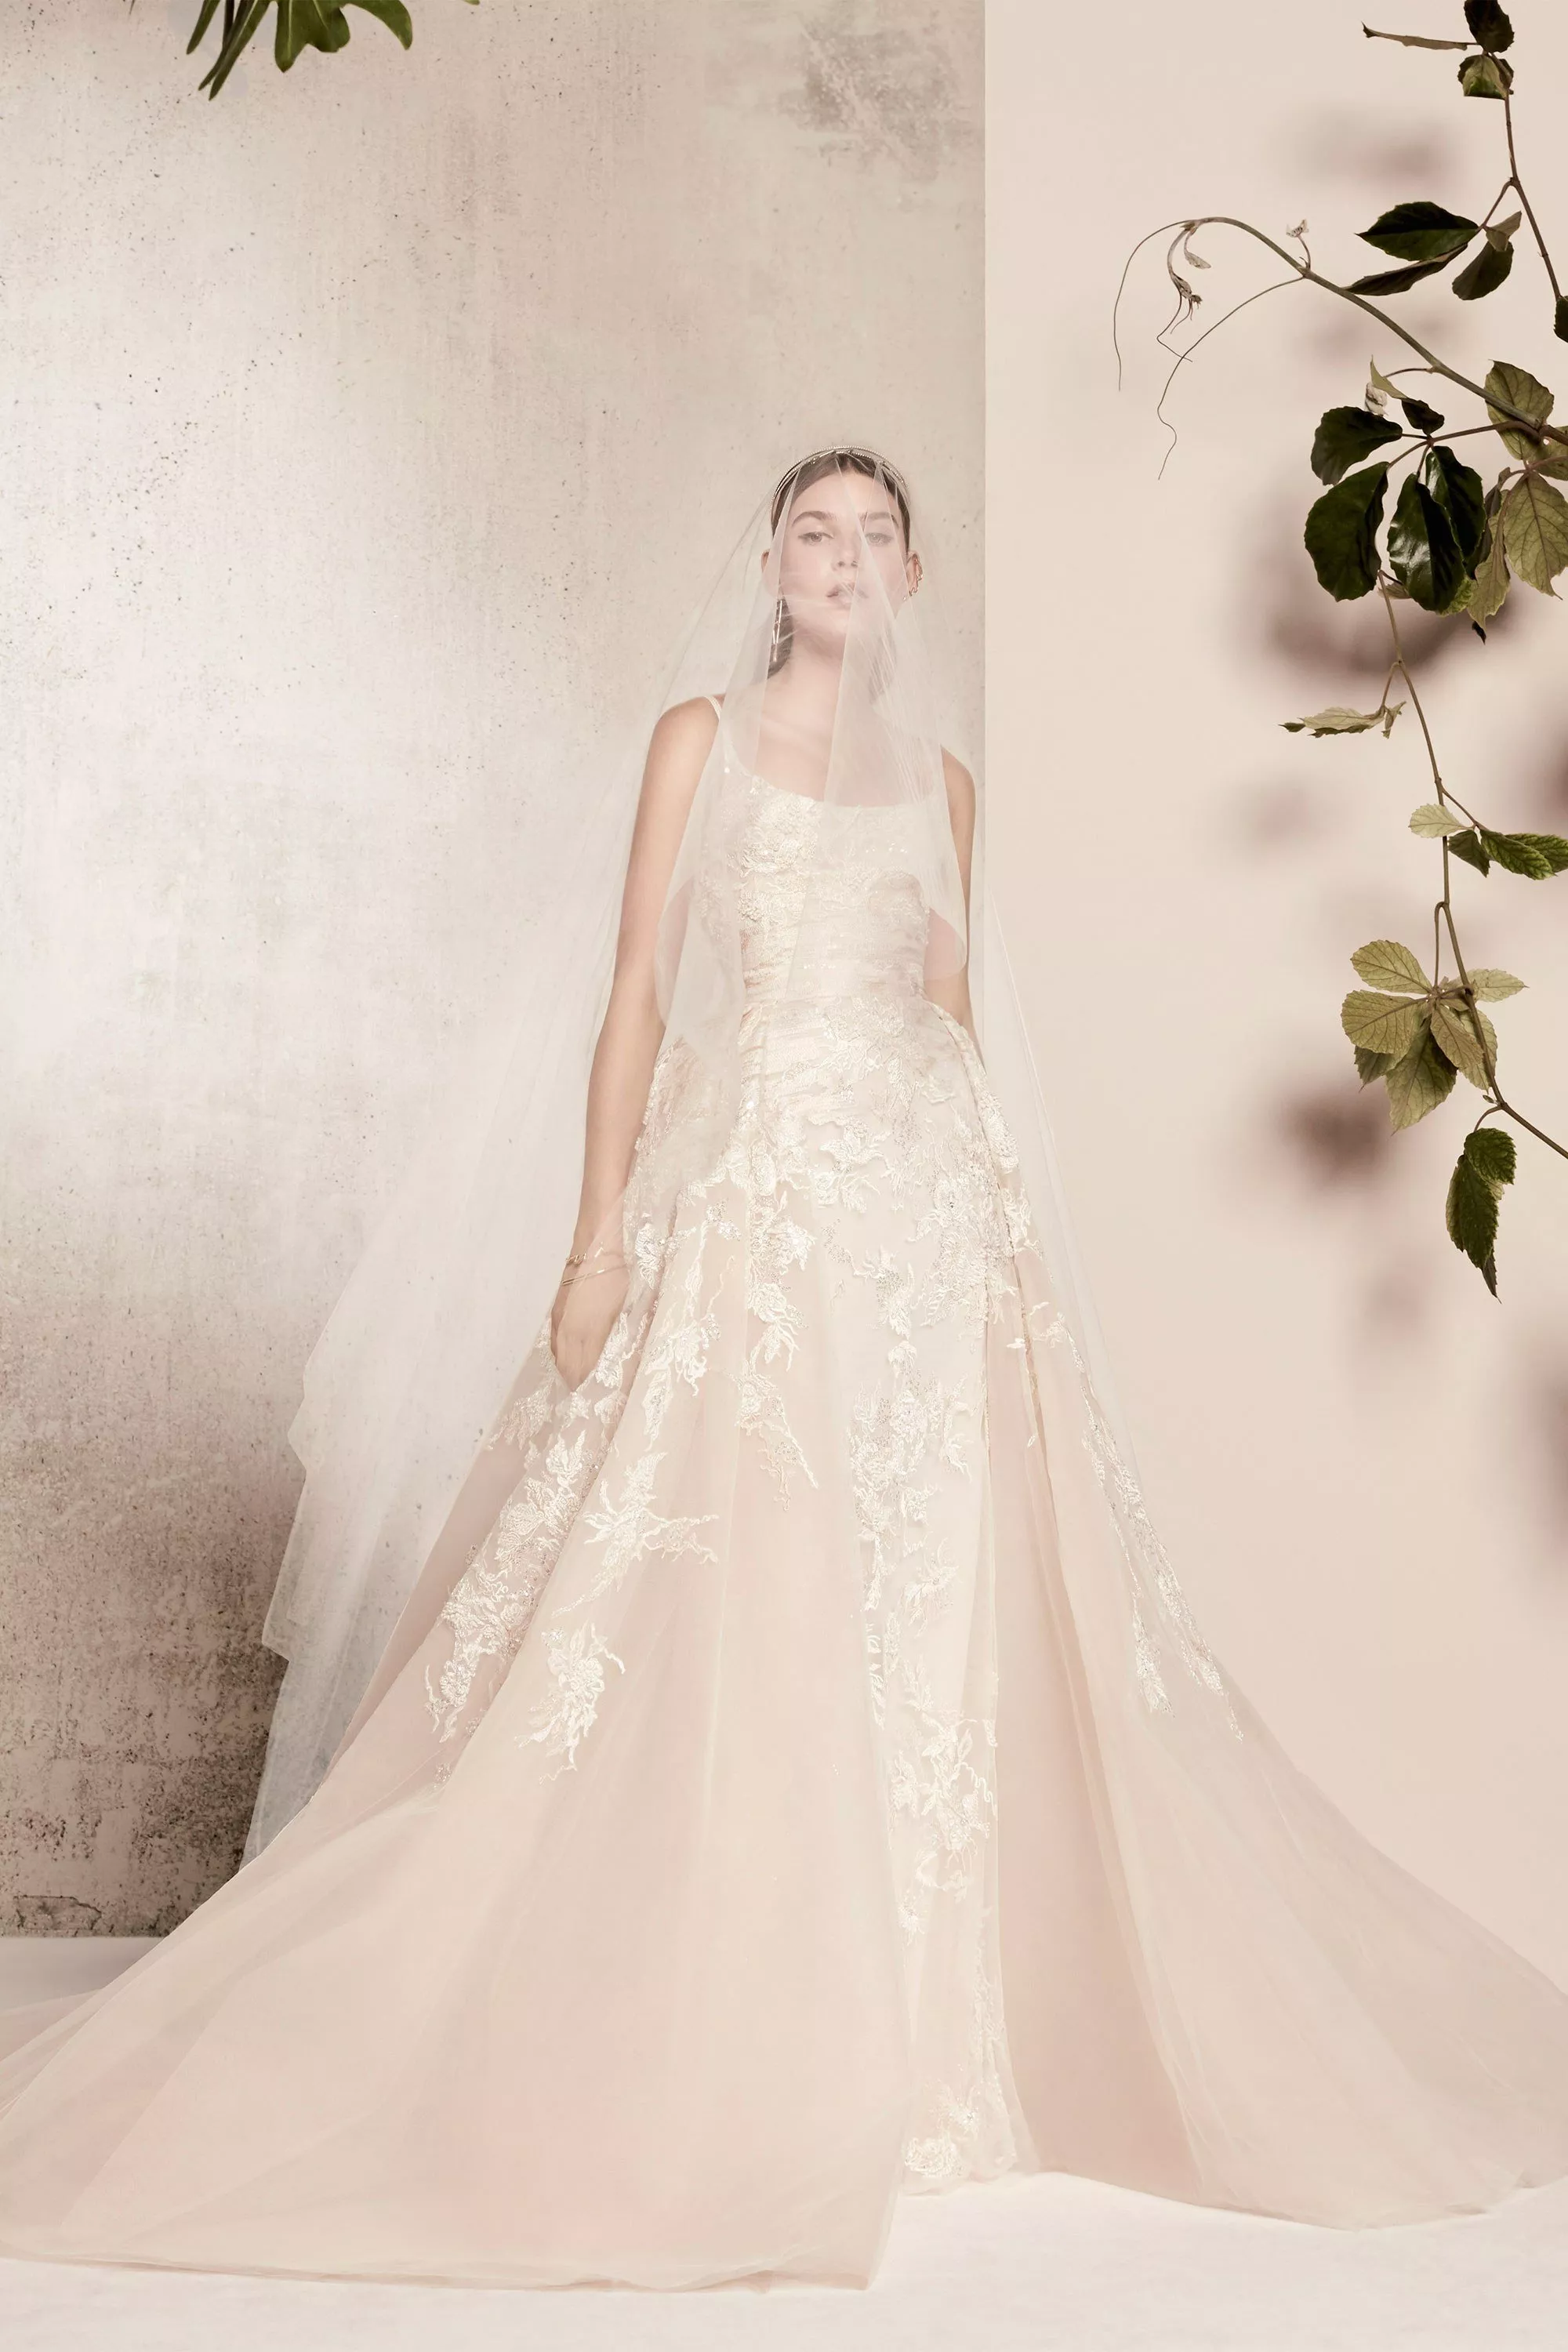 مجموعة Elie Saab لفساتين الزفاف لربيع 2018 رومنسيّة وعصريّة في آنٍ واحد